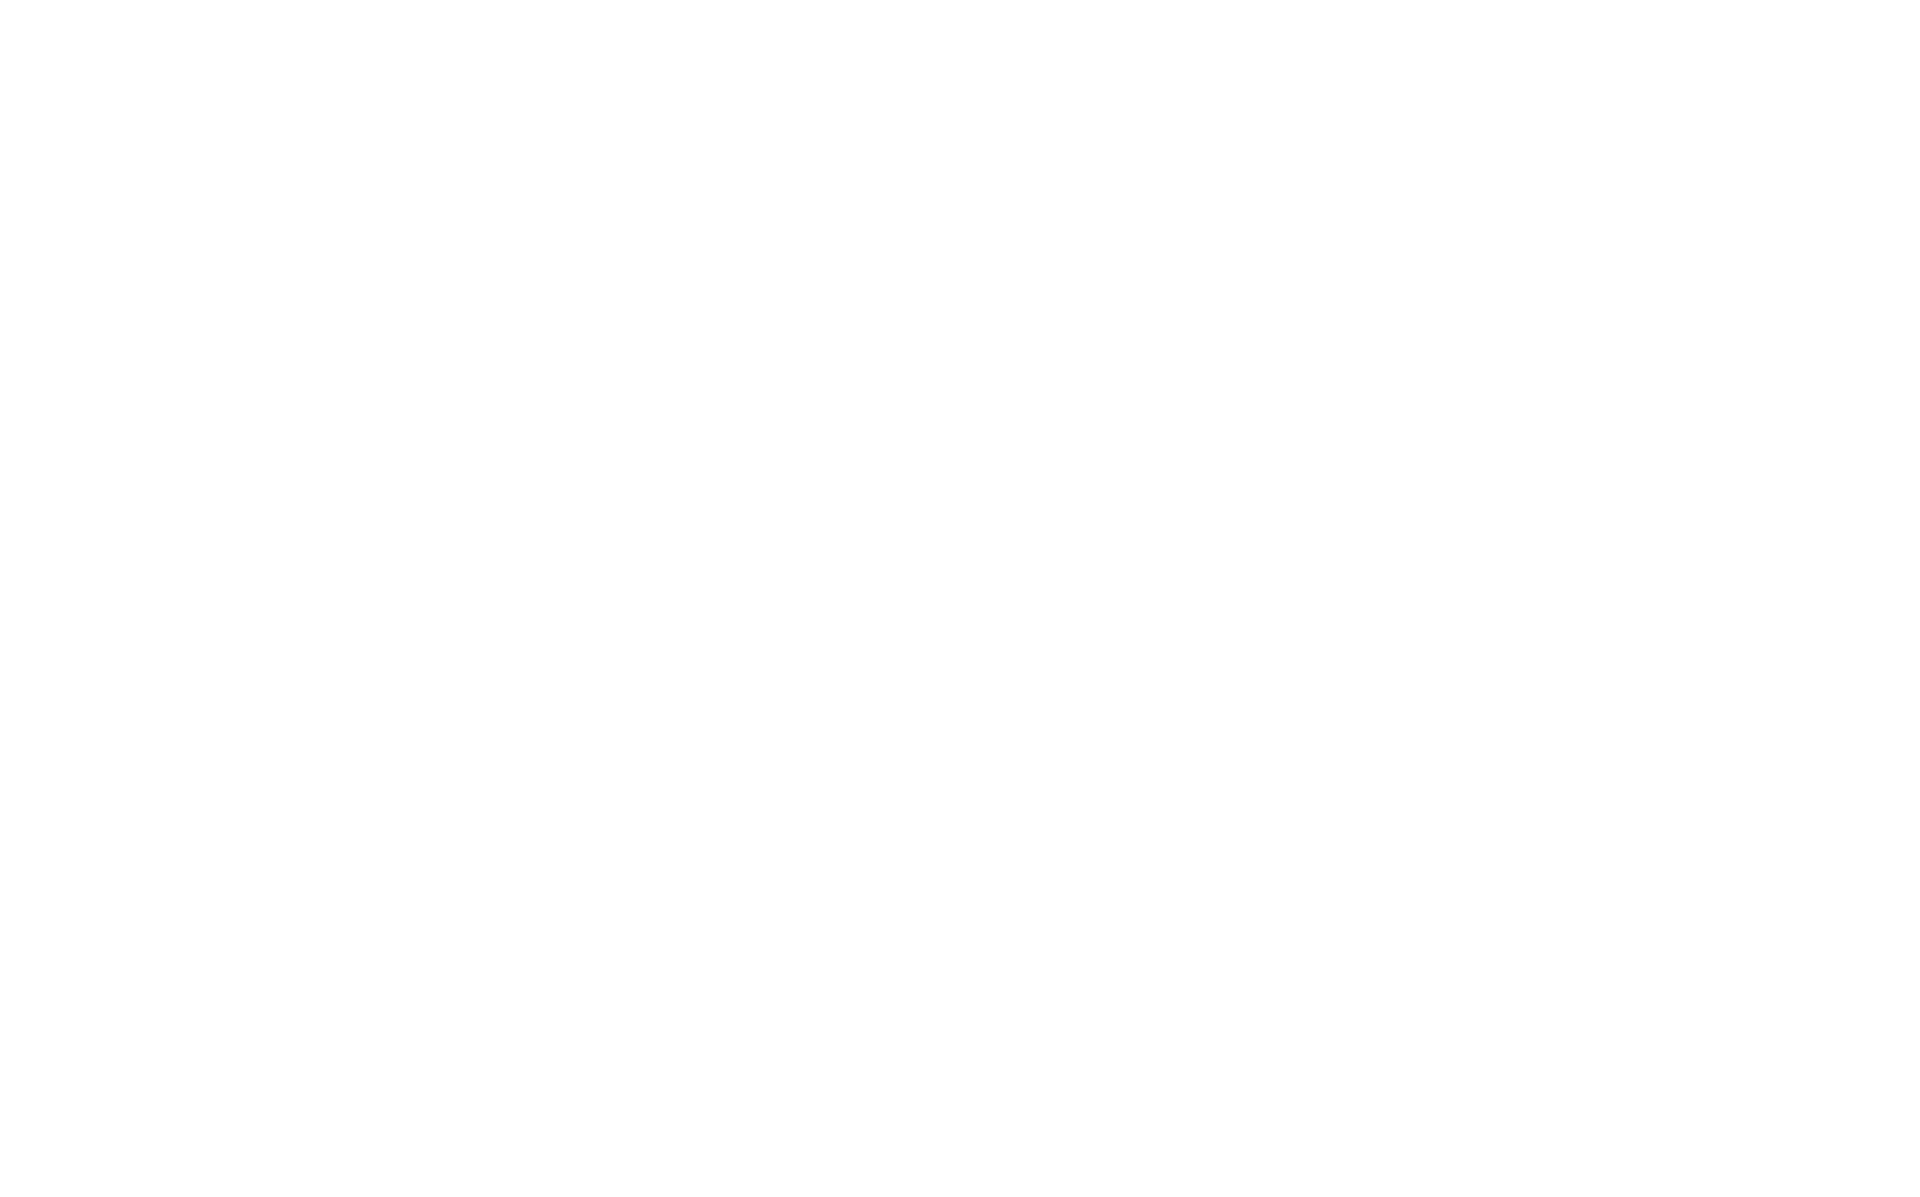 Cape Capital logo.